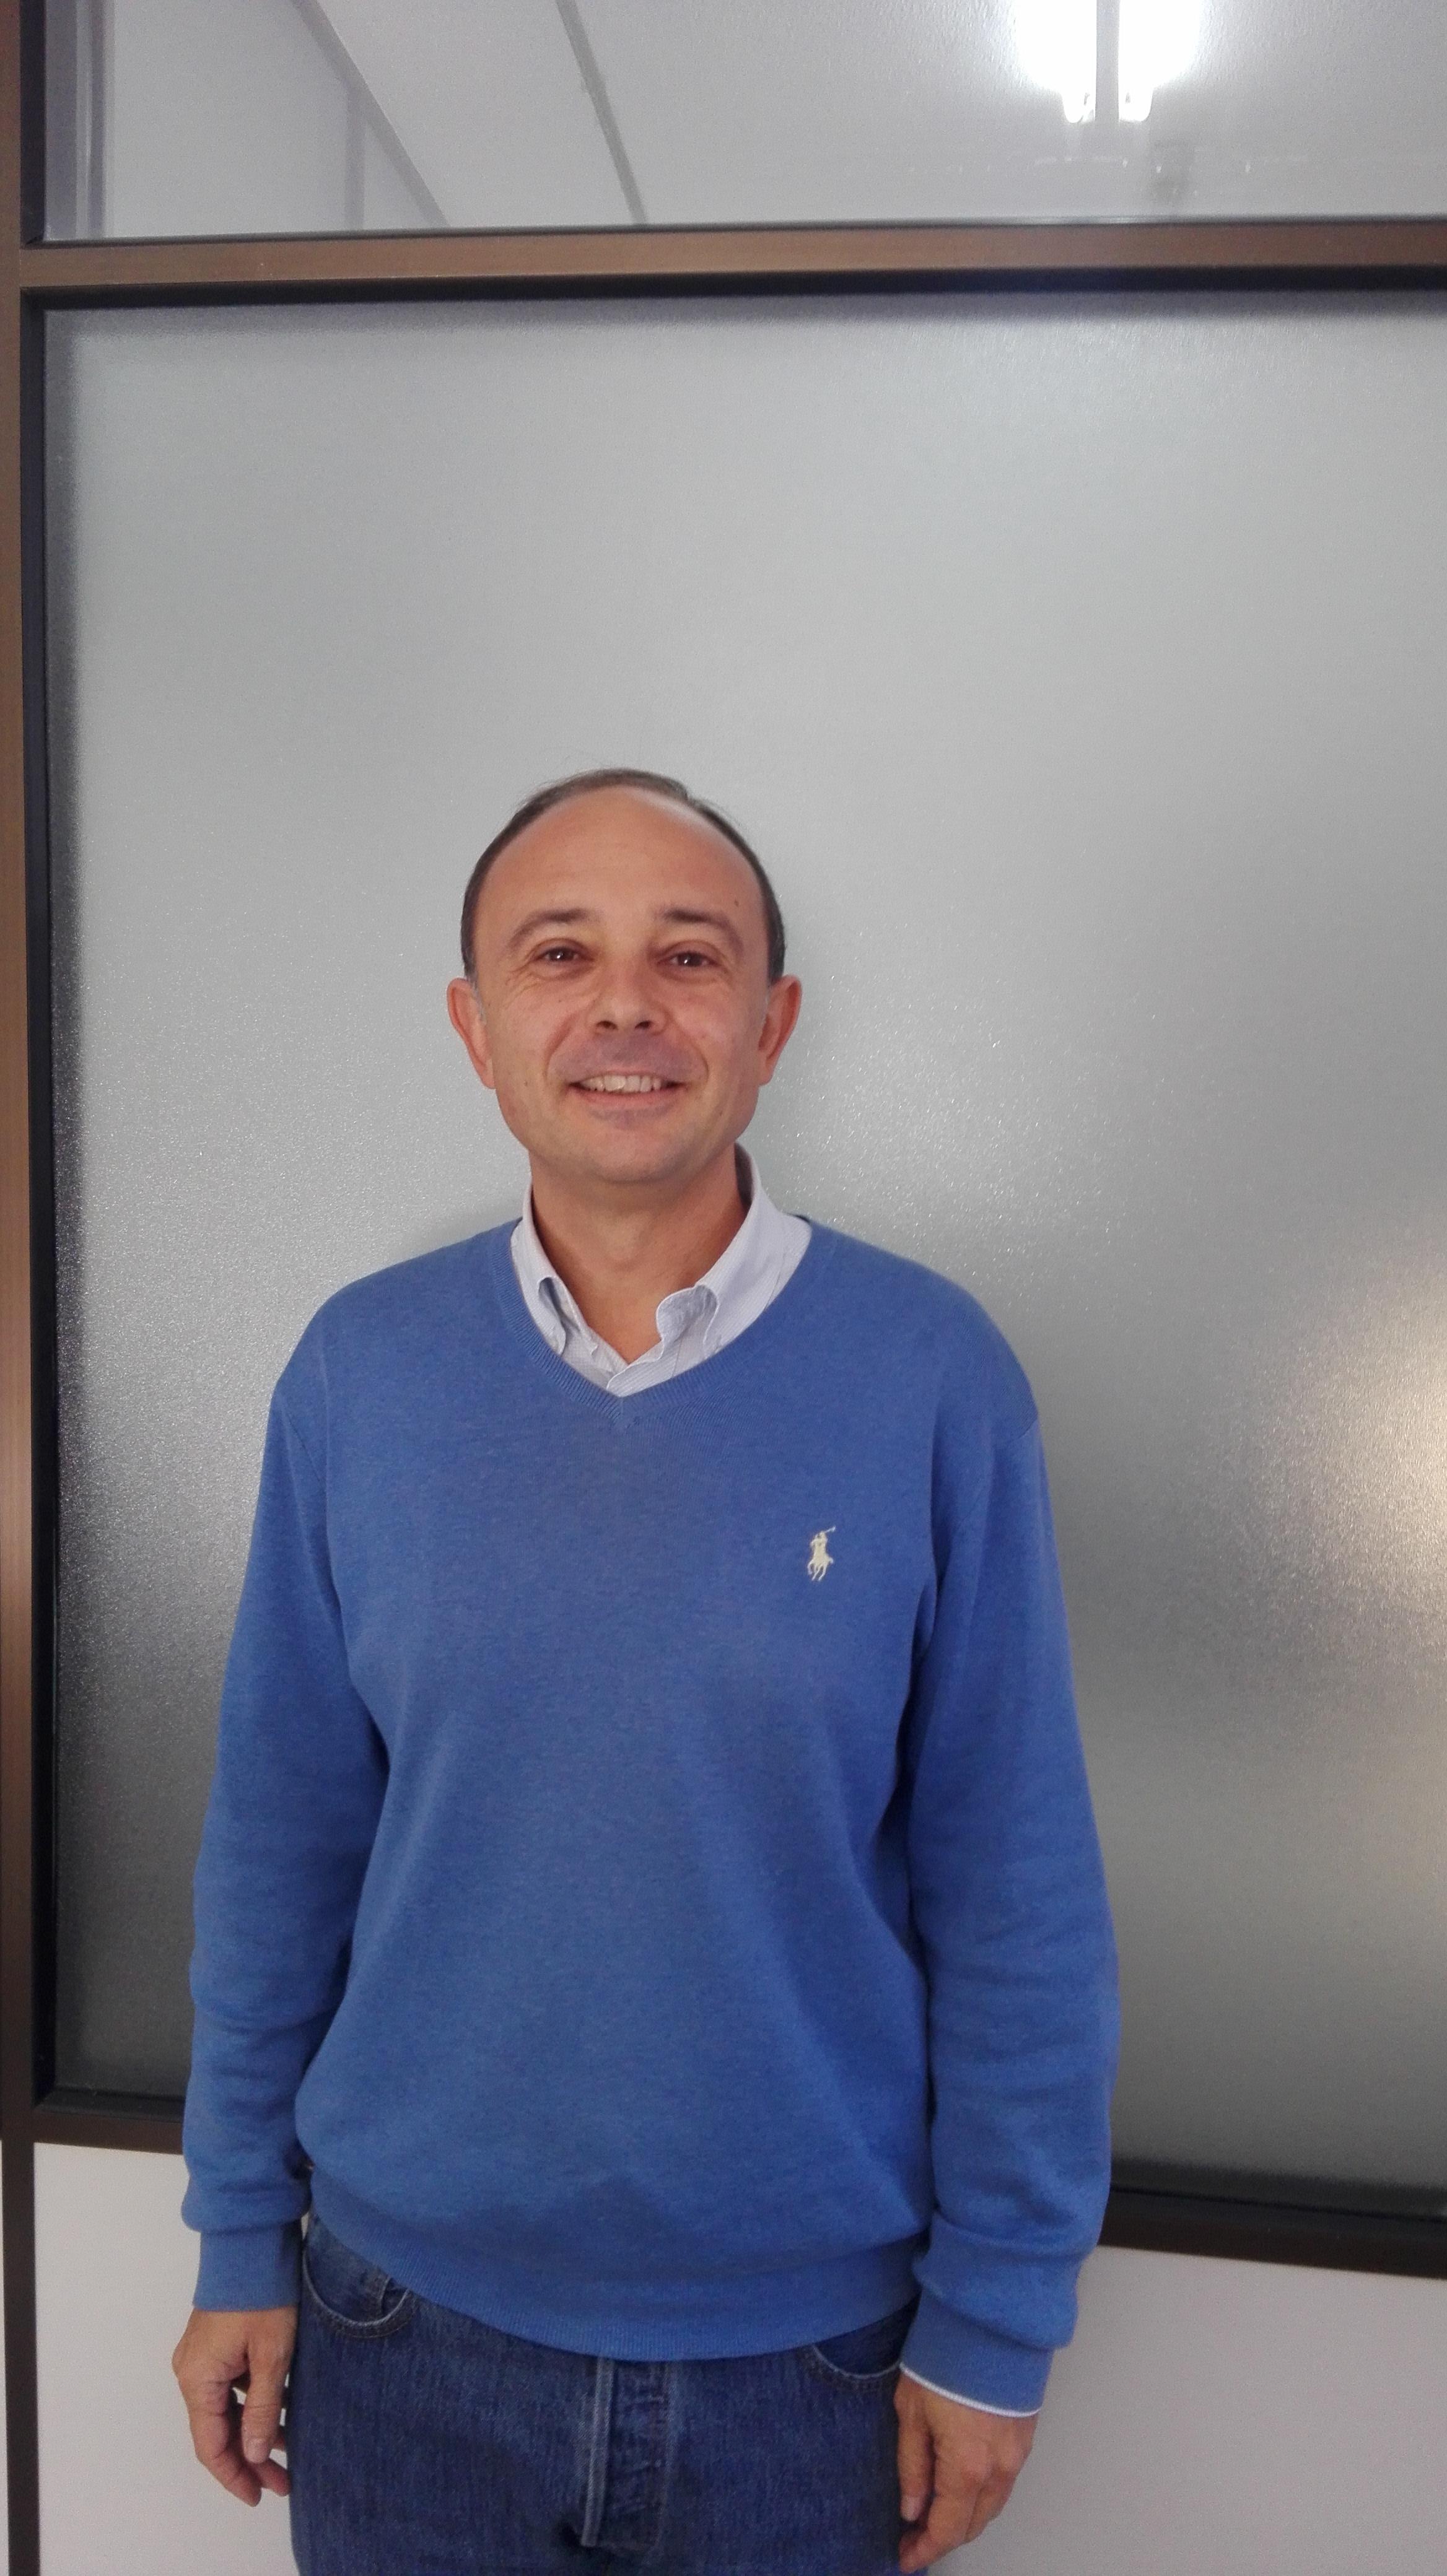 Alberto Ruano-Ravina, Profesor de Medicina Preventiva y Salud Pública de la Universidad de Santiago